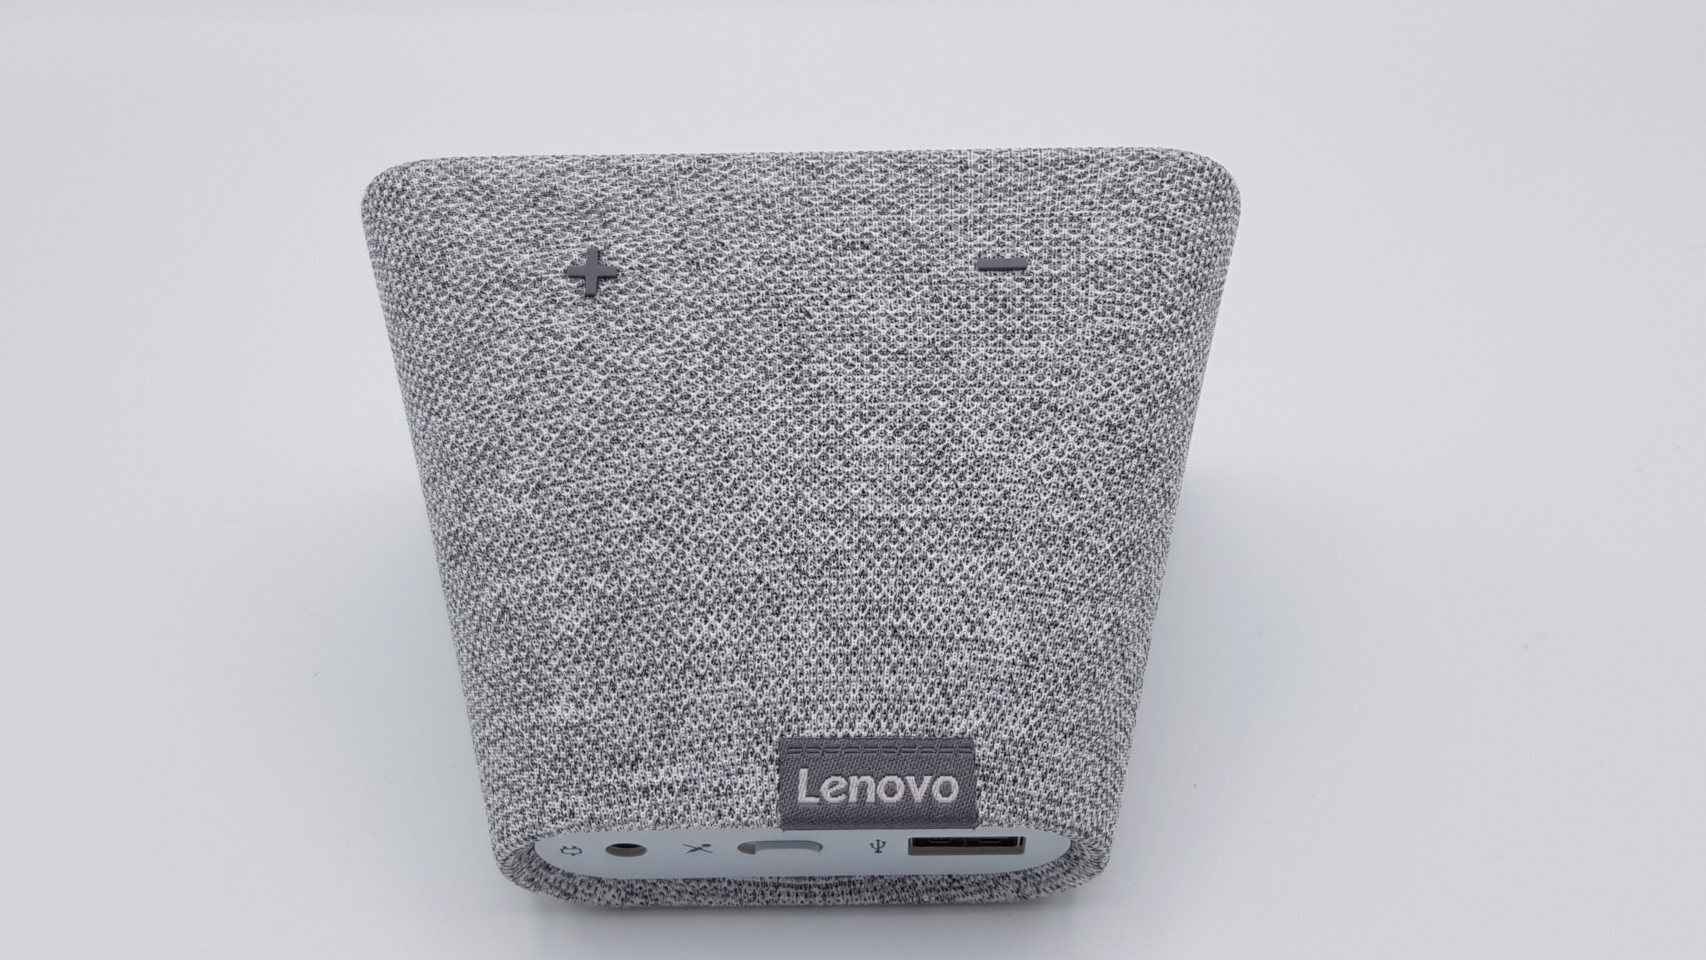 Lenovo pone a la venta su despertador inteligente